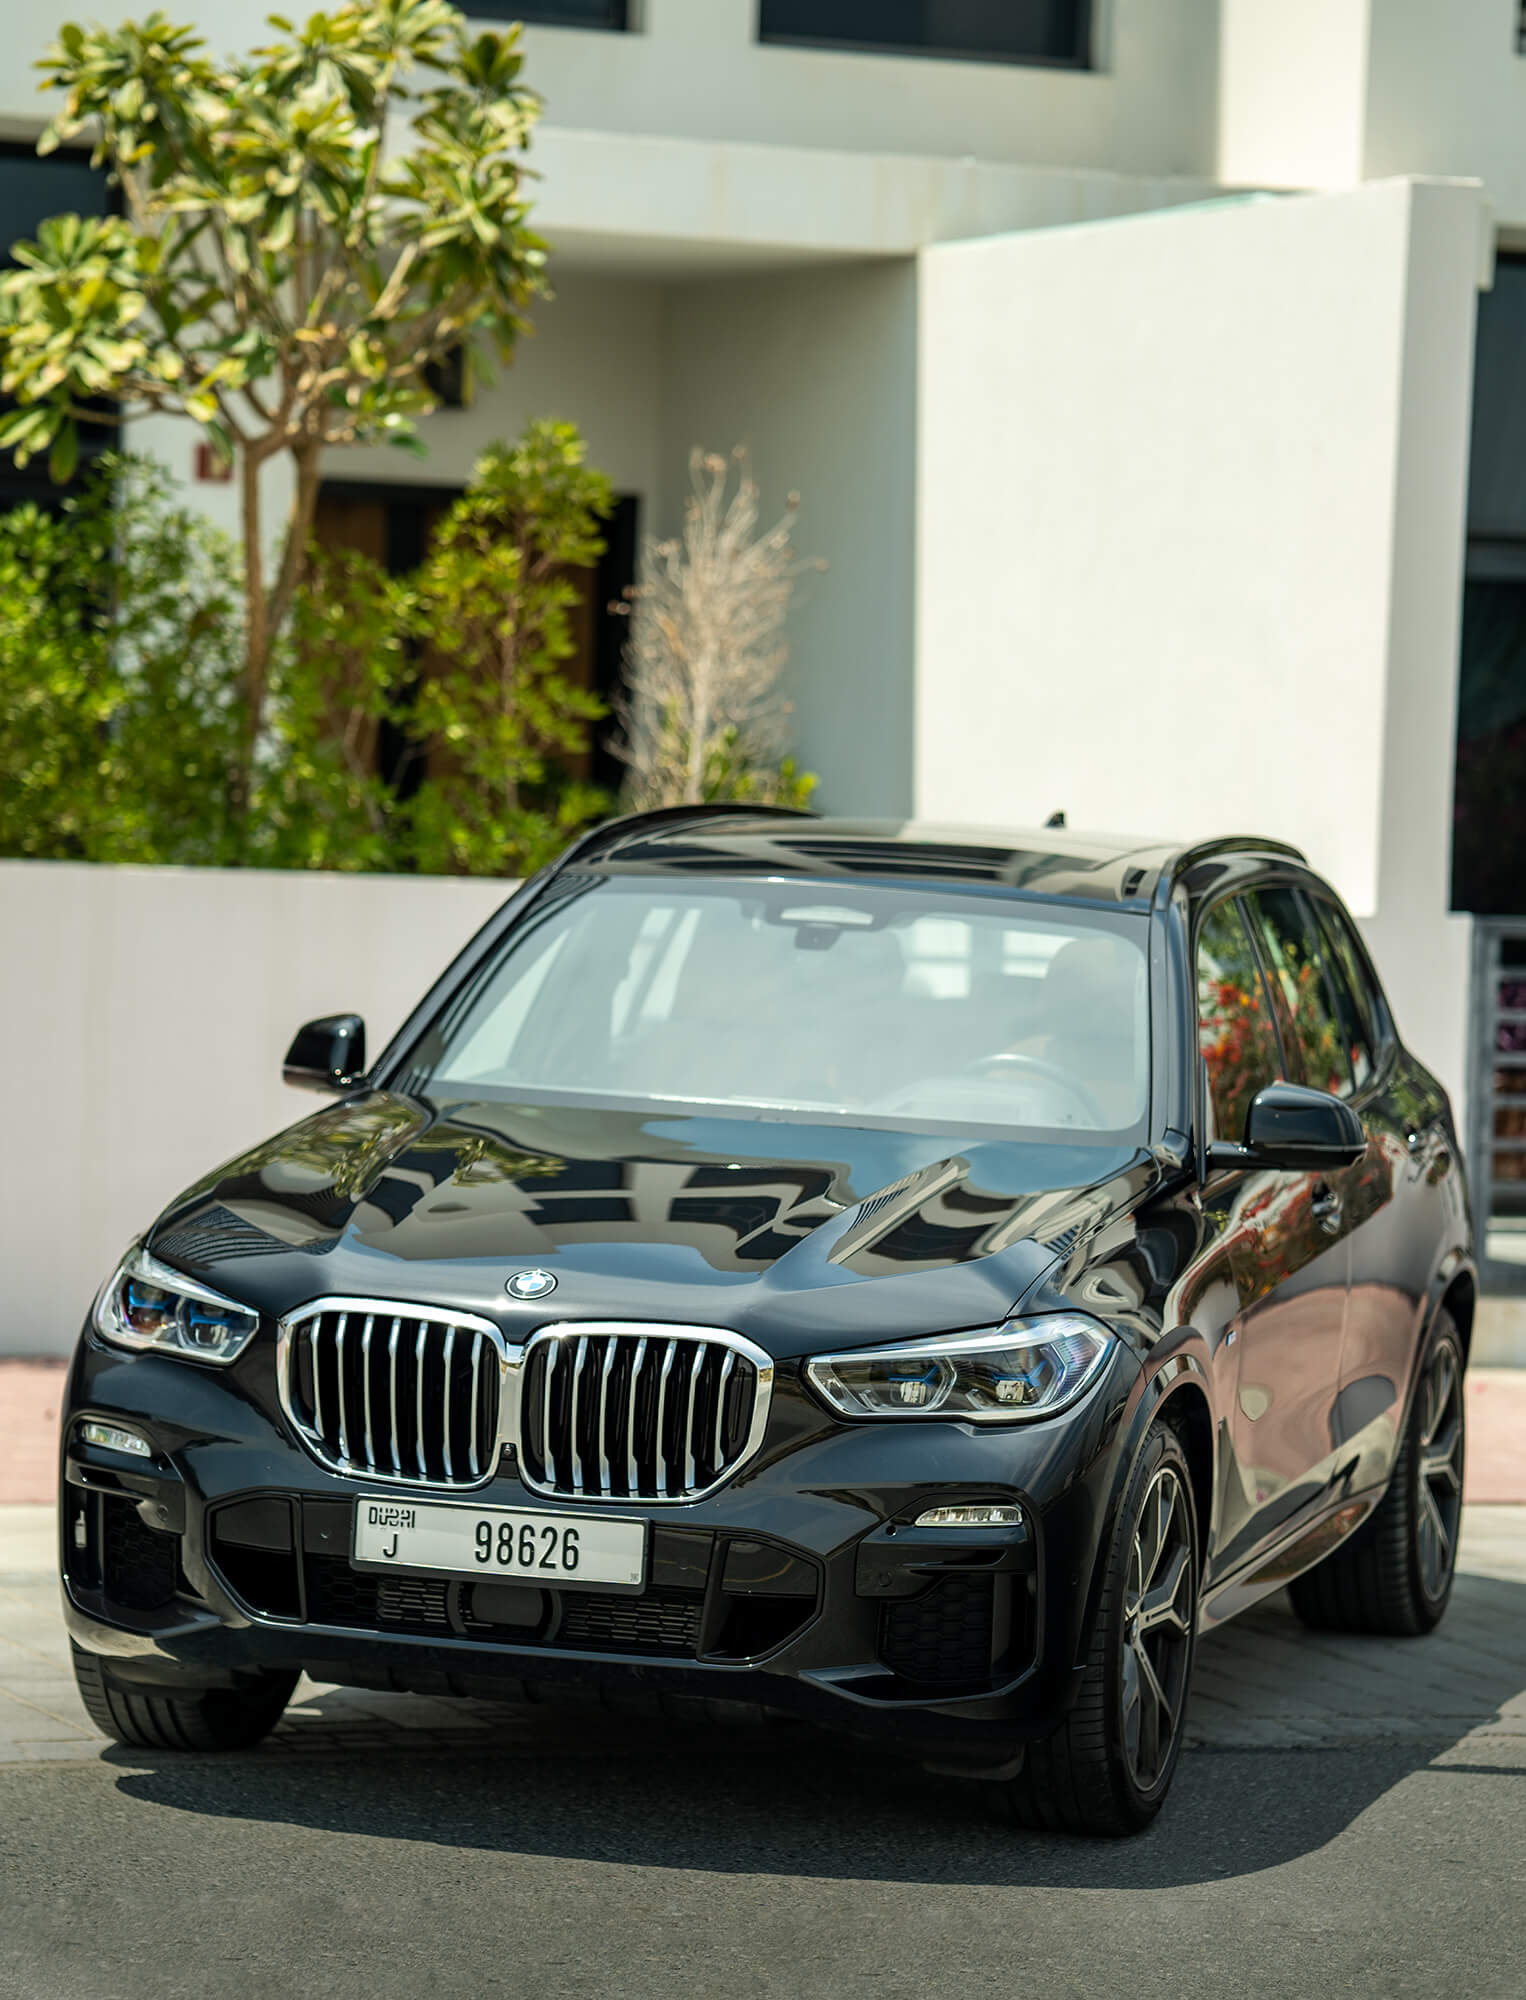 Hyr BMW X5 i Dubai